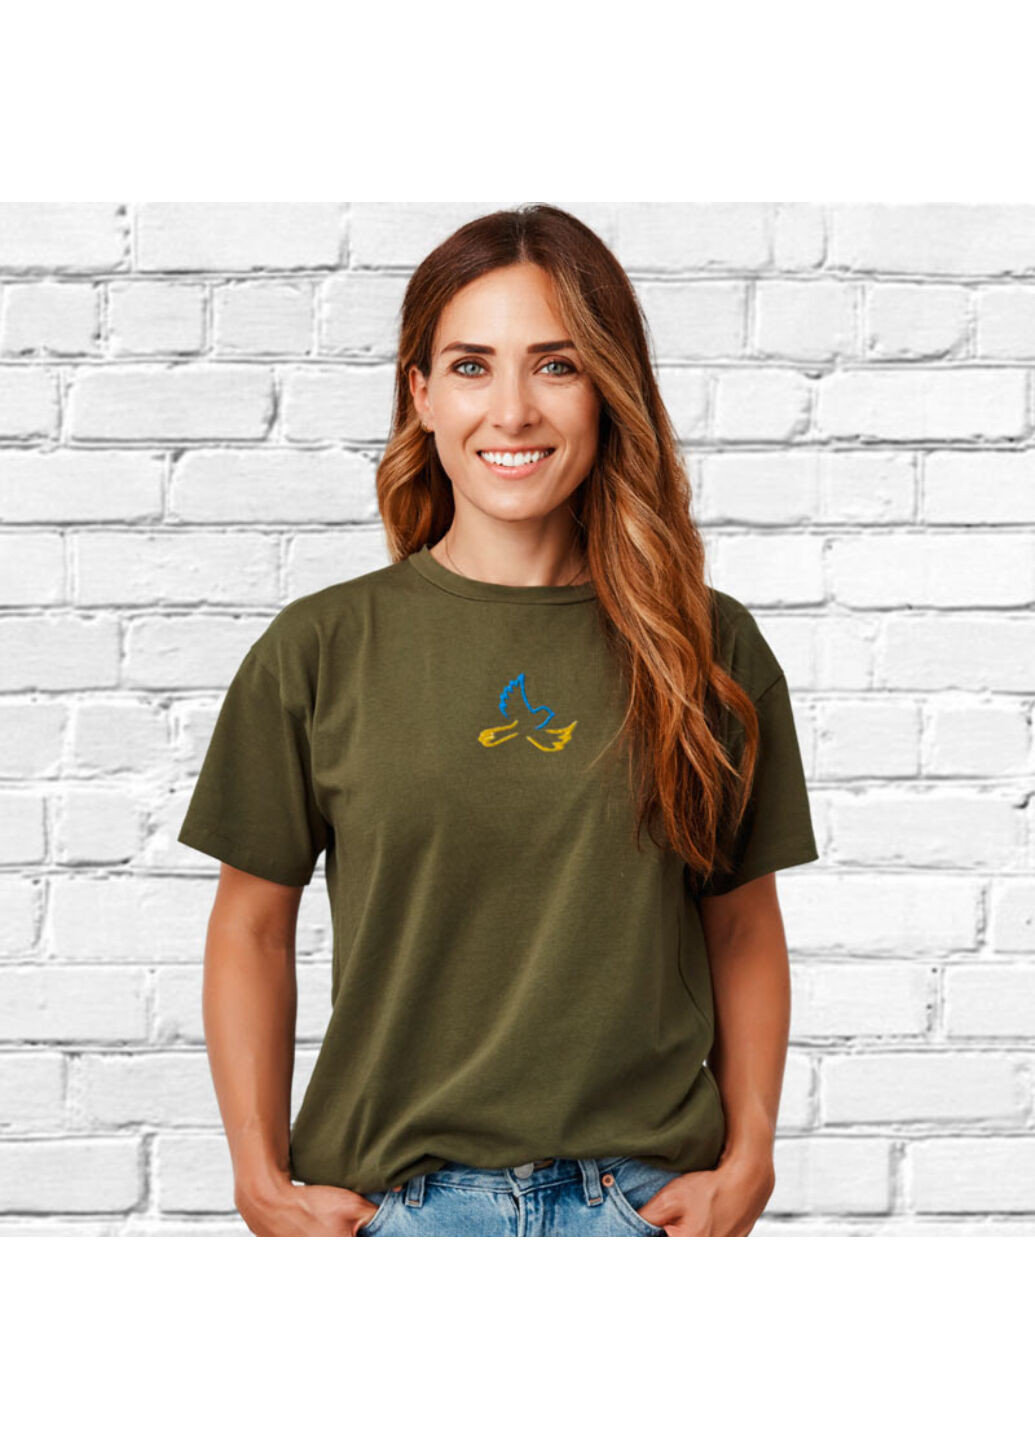 Хакі (оливкова) футболка з вишивкою голуба 02-2 жіноча millytary green s No Brand